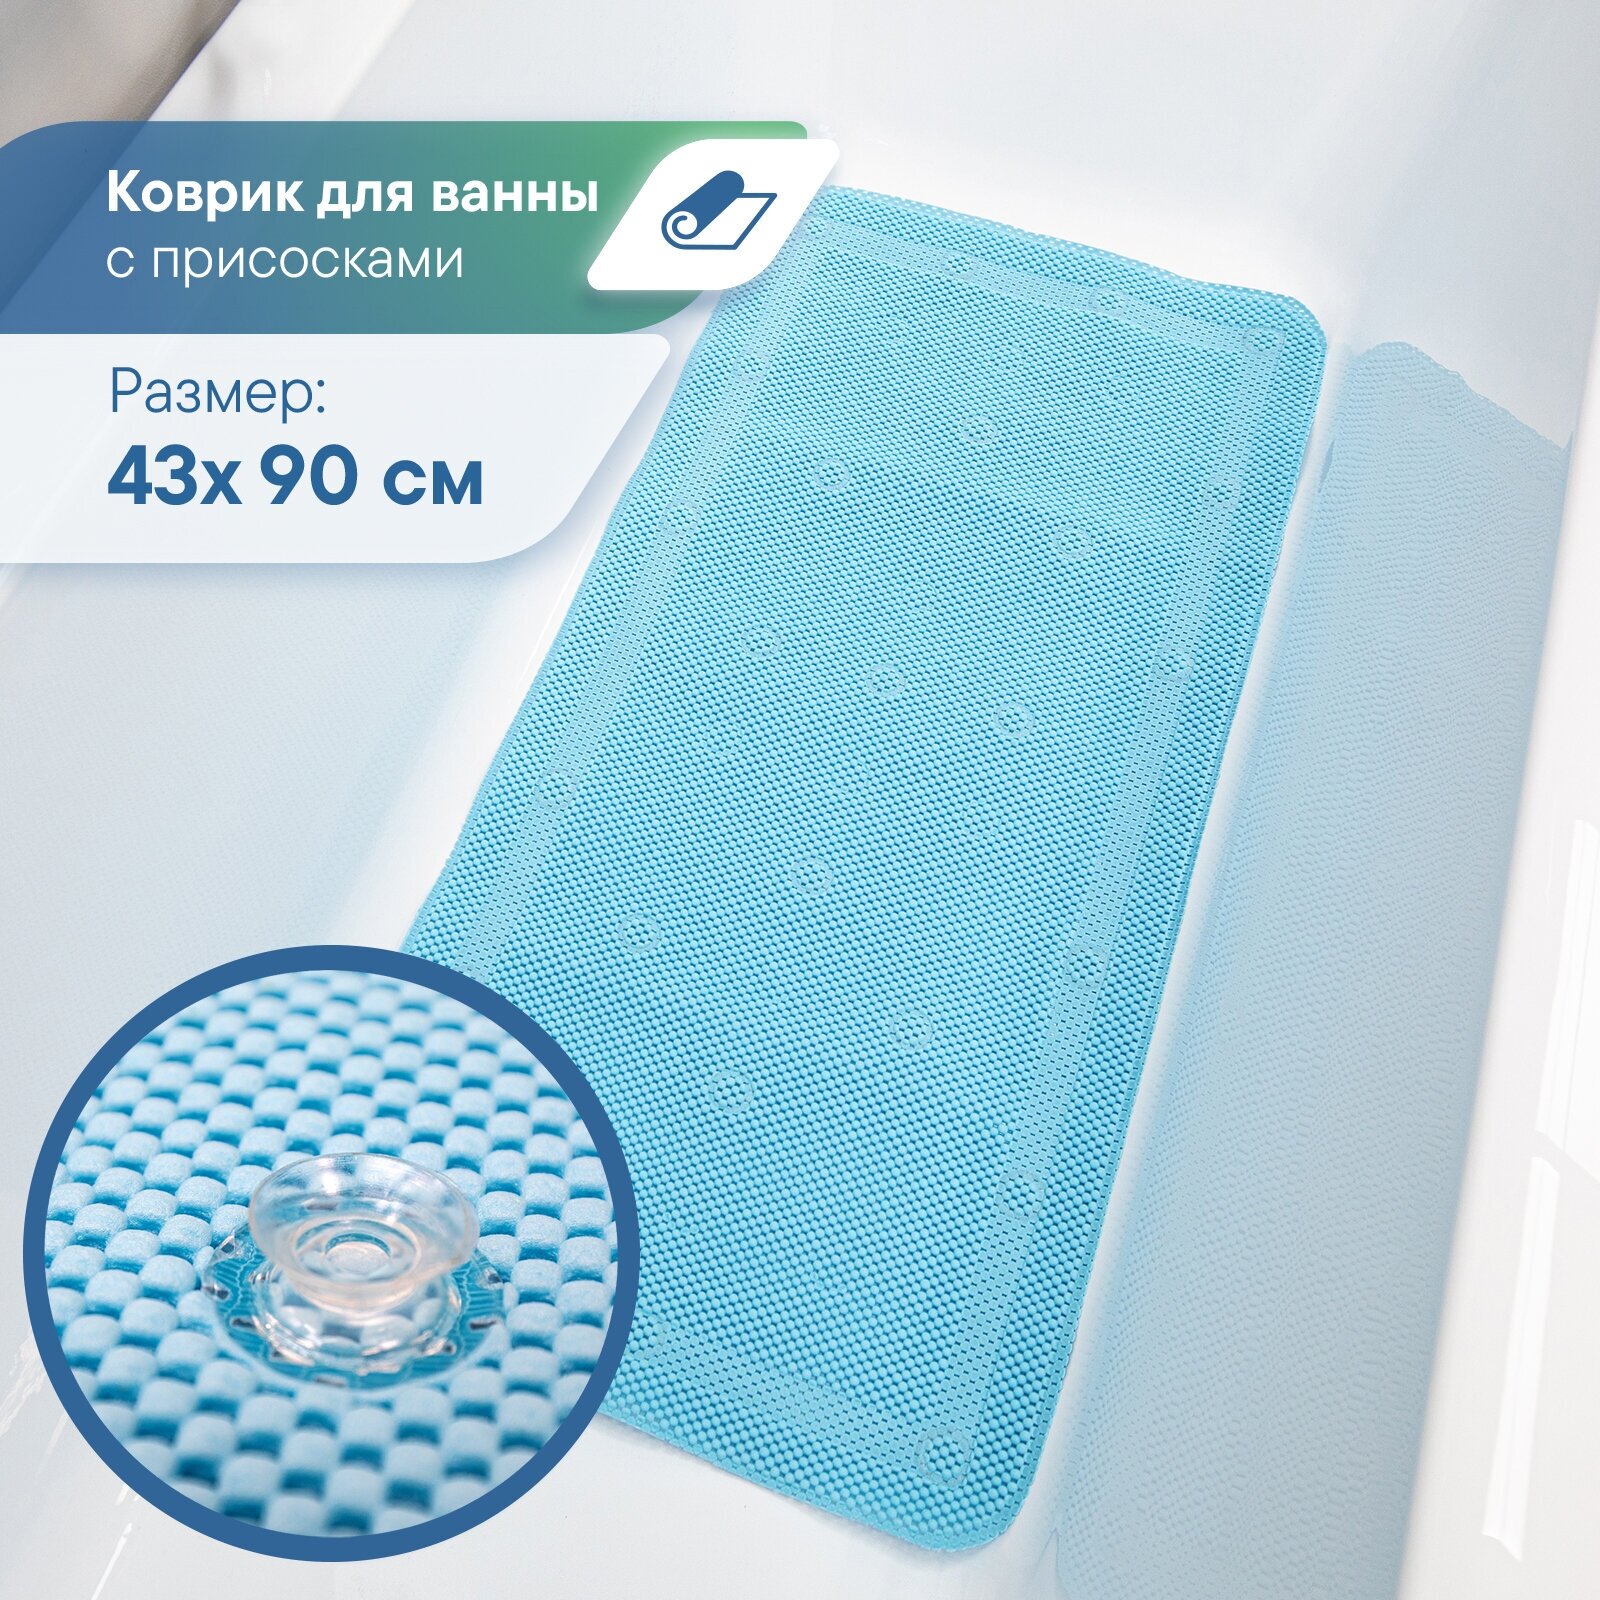 Коврик для ванны с присосками VILINA мягкий противоскользящий массажный 43х90 см "Лотос" голубой